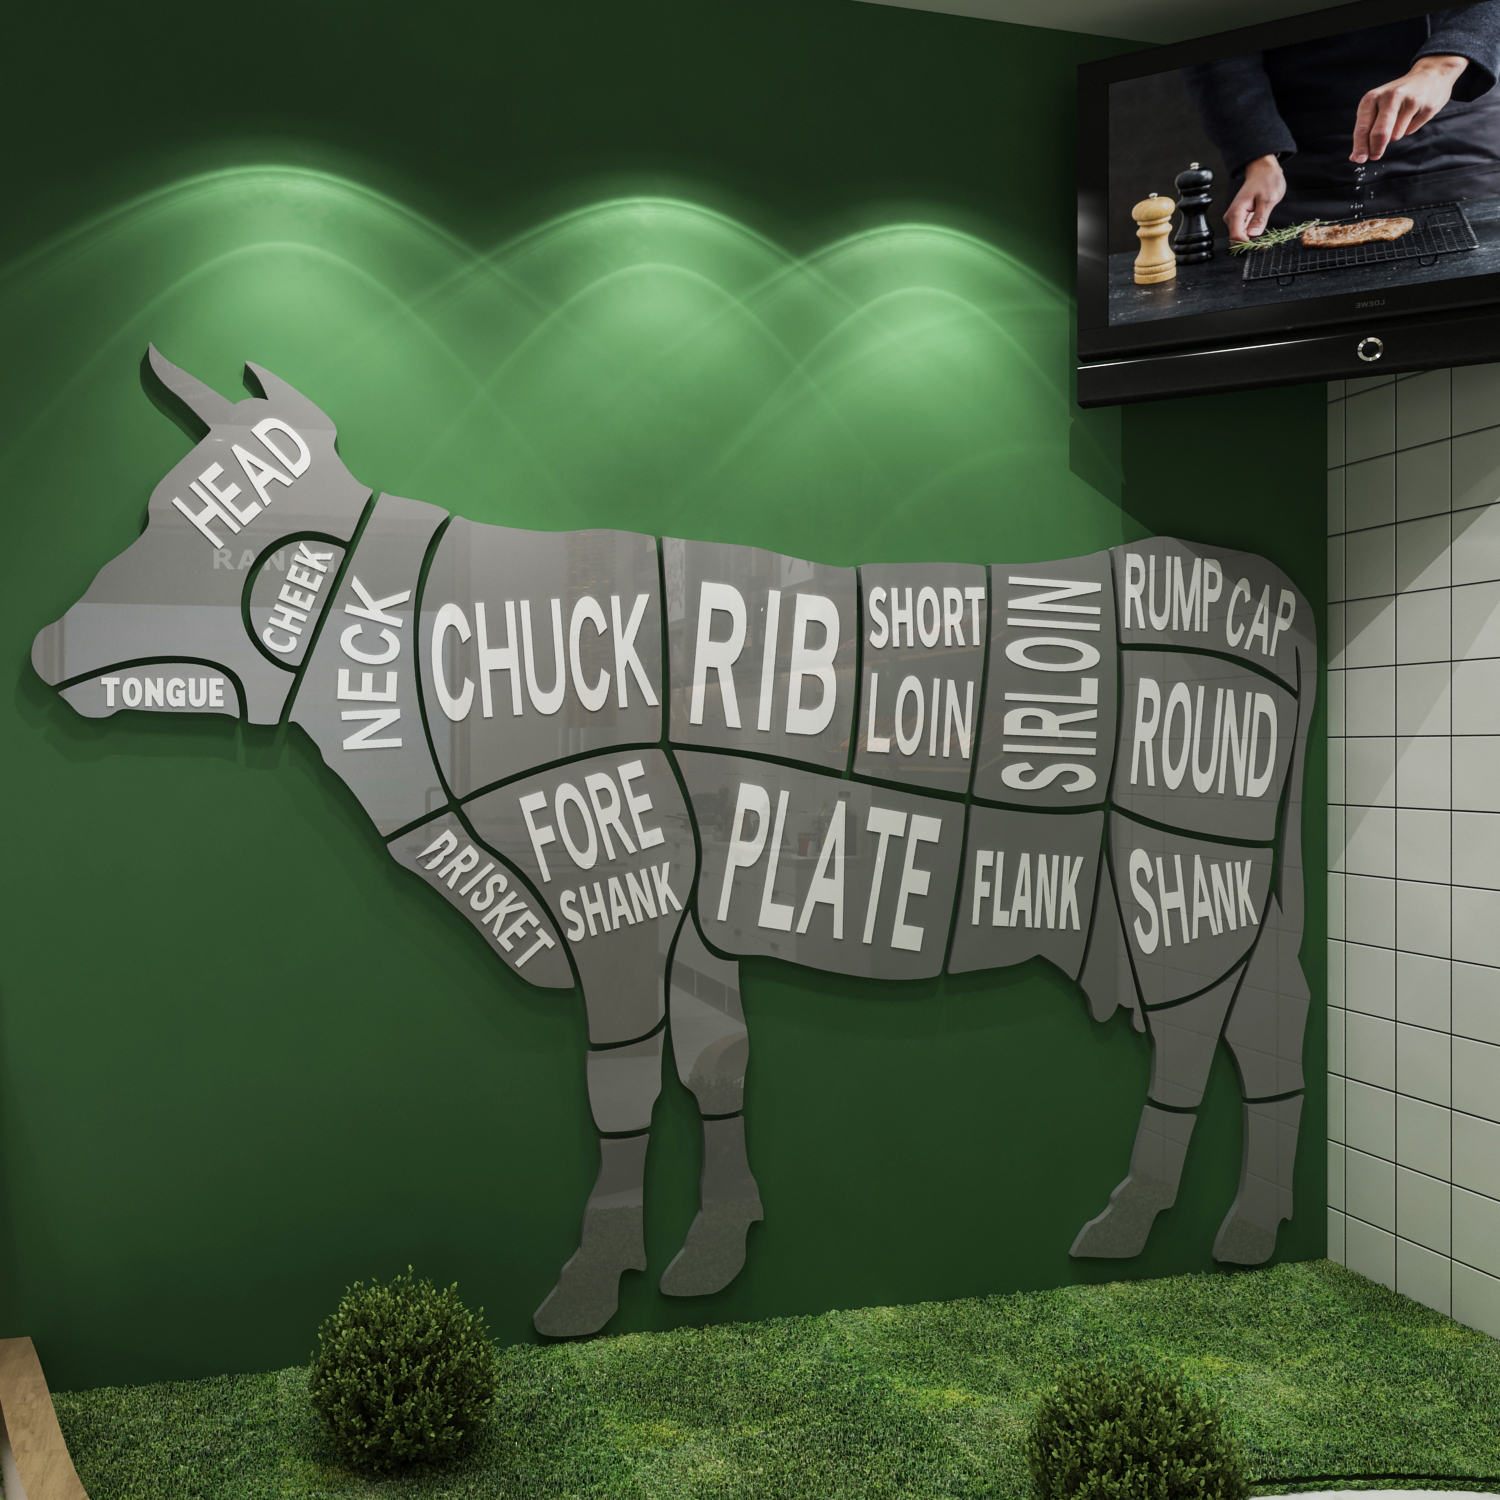 牛肉分割分解部位图墙贴纸装饰生鲜超市牛排火锅西餐厅餐饮店墙面